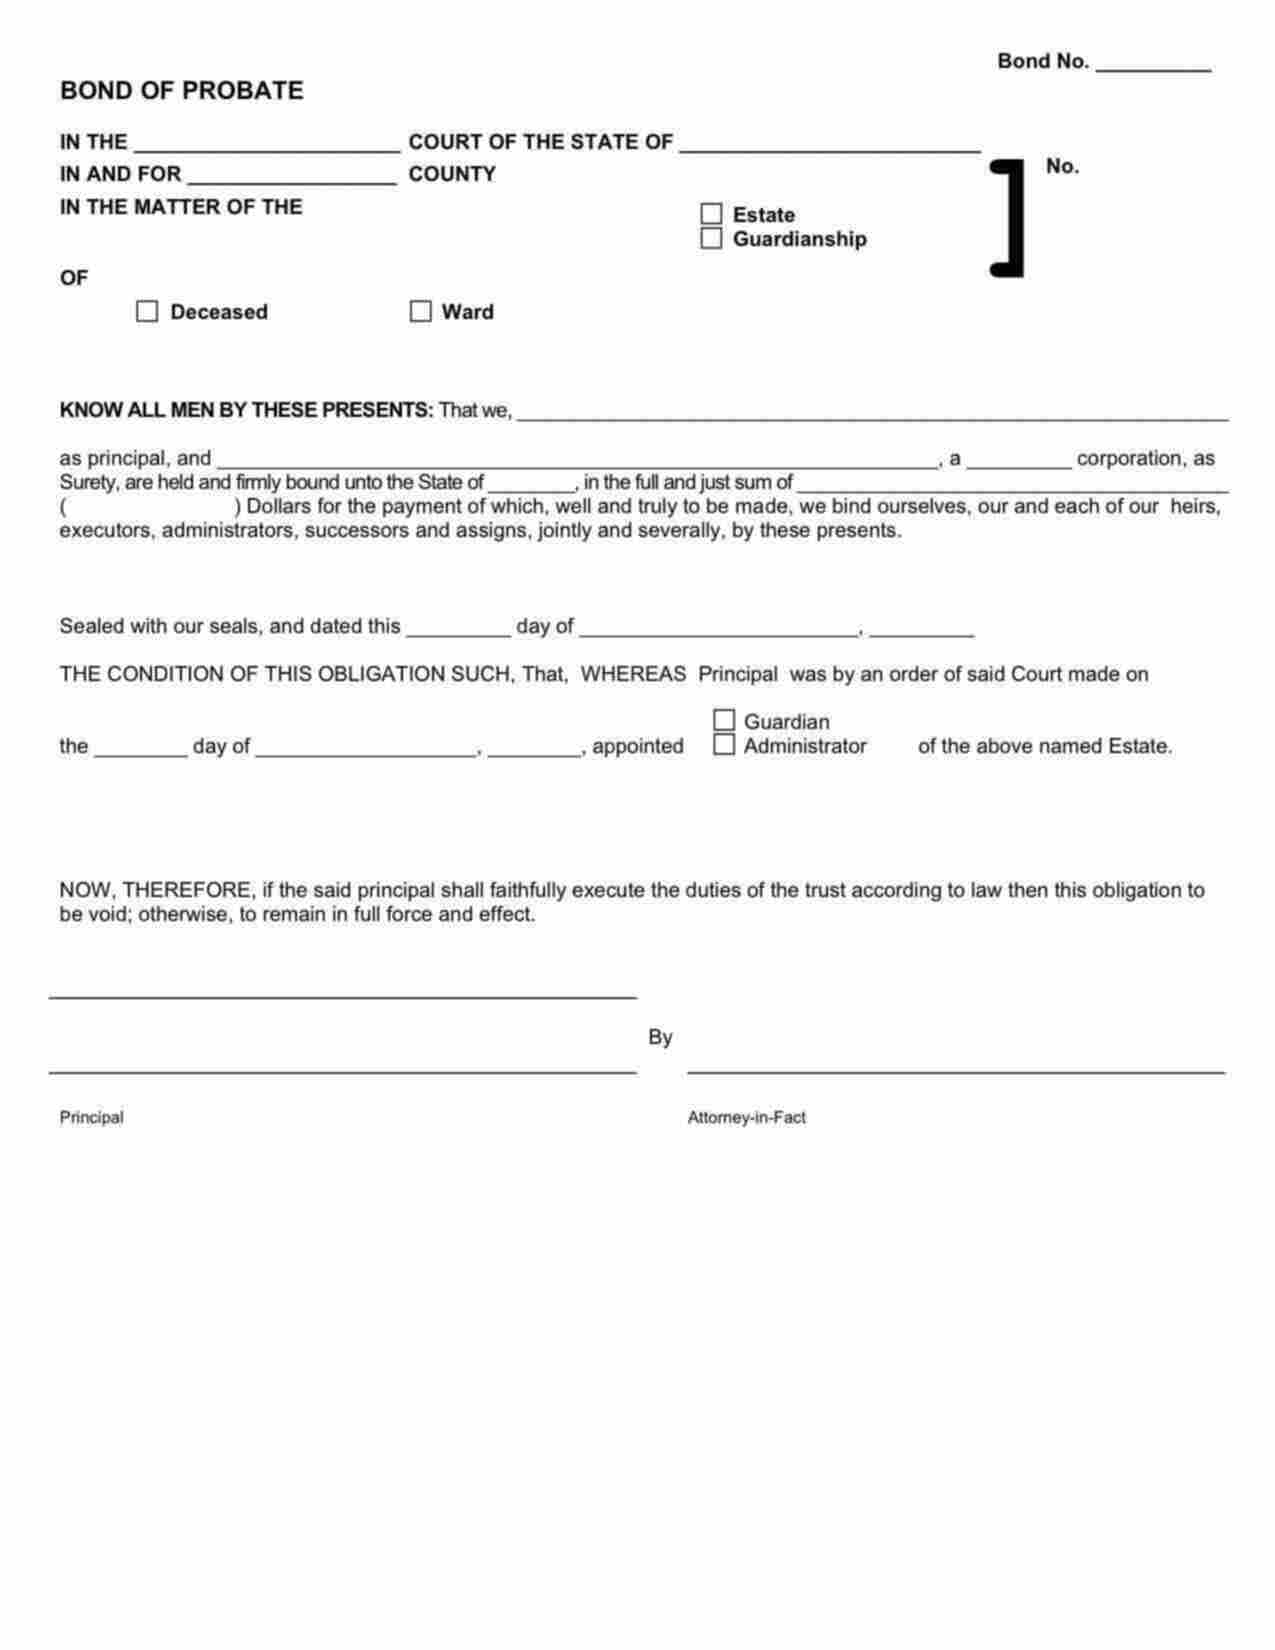 Oregon Administrator/Executor Bond Form